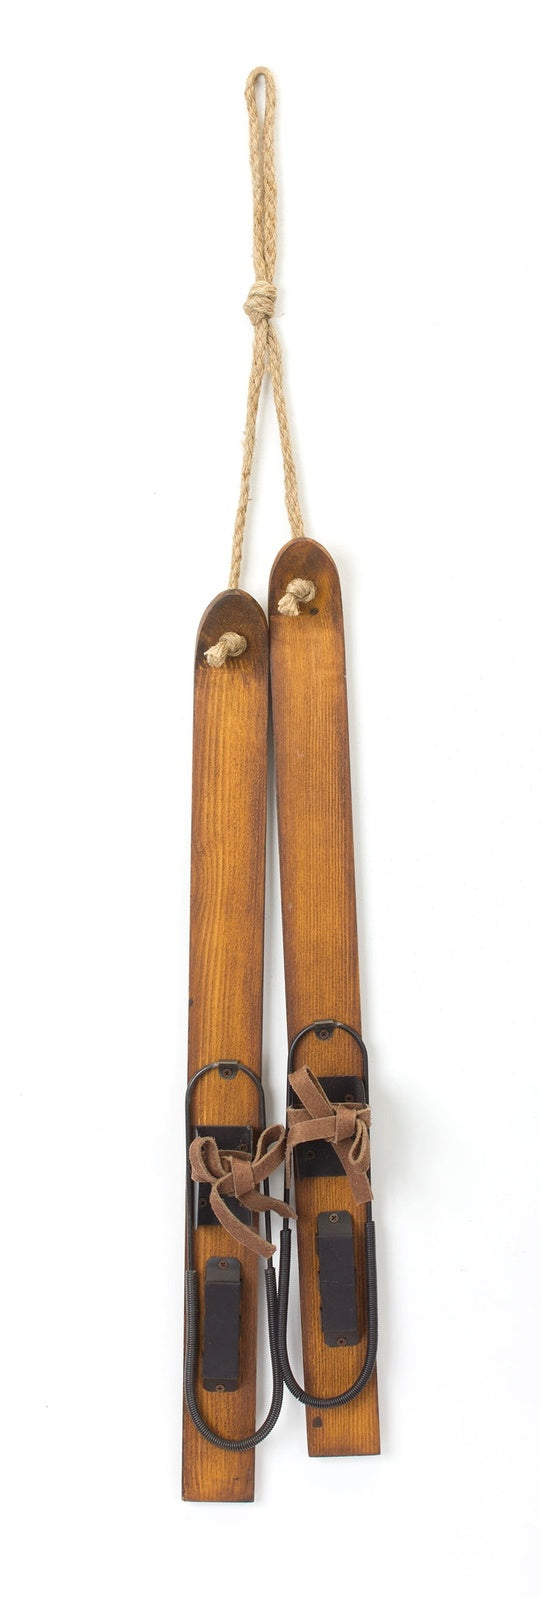 Vintage-Wood-Hanging-Ski-Décor-(Set-of-4)-Decor